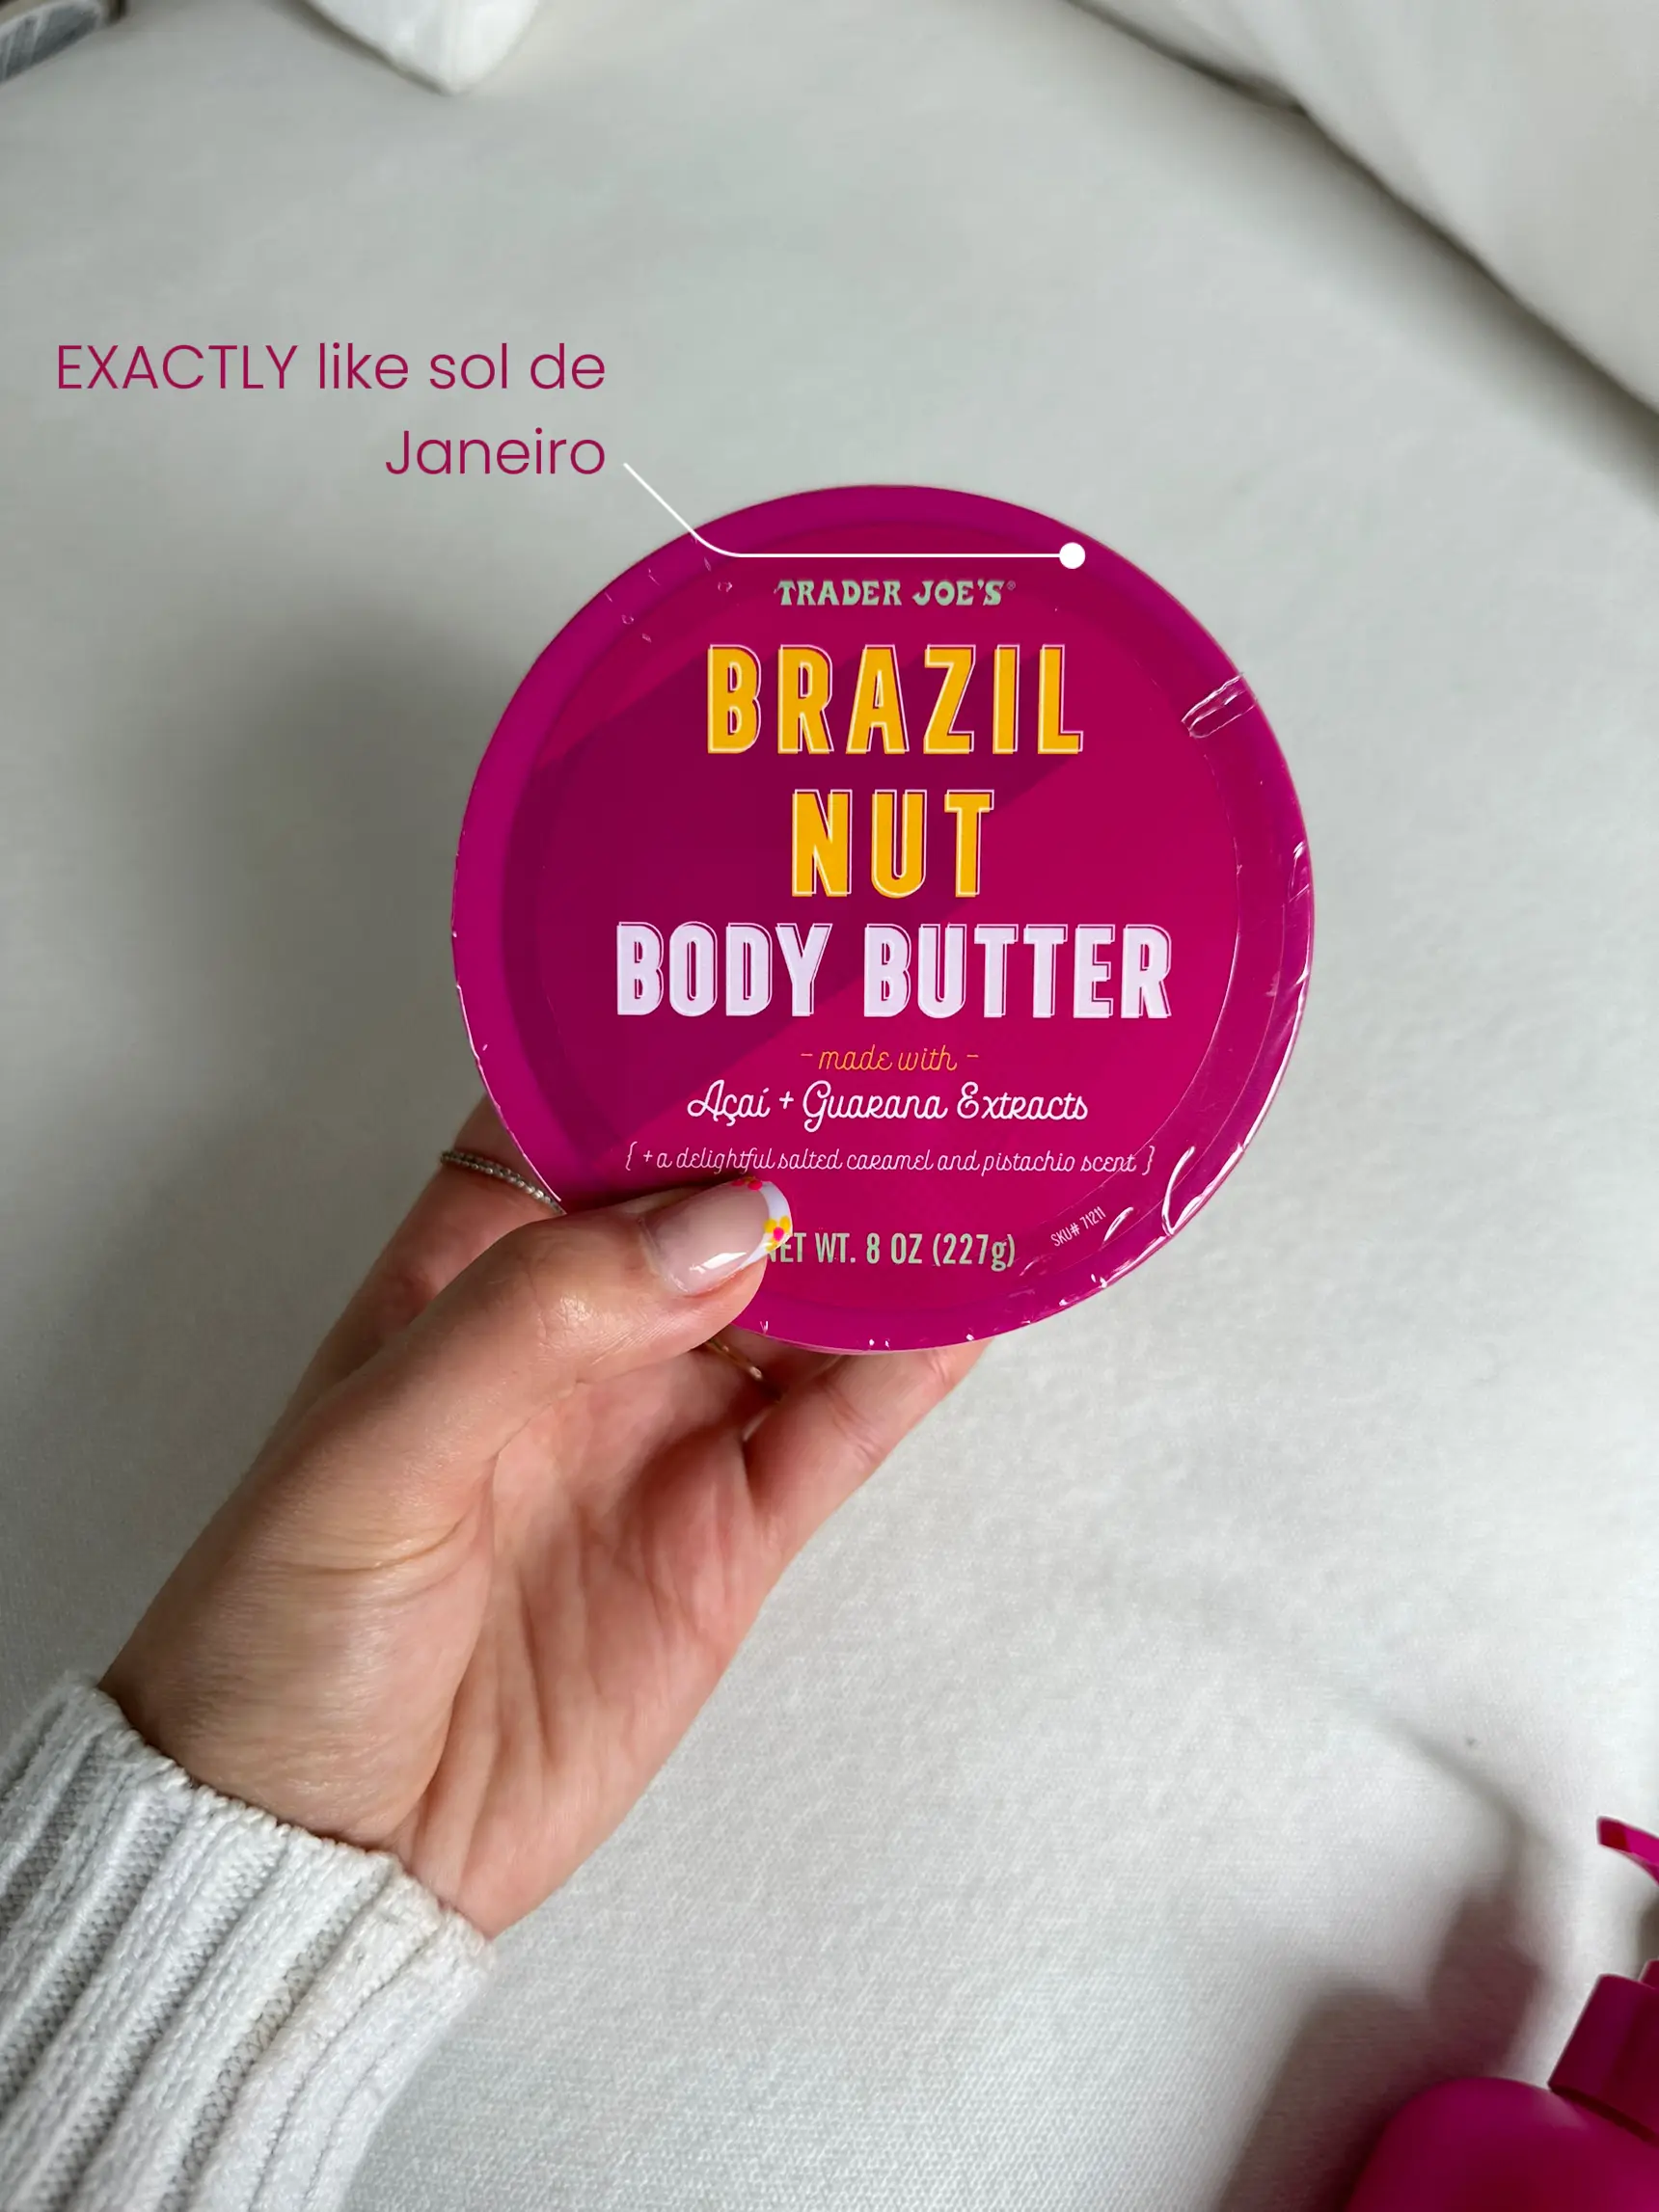 Organic Brazil Nut Butter, 8 oz (227 g)